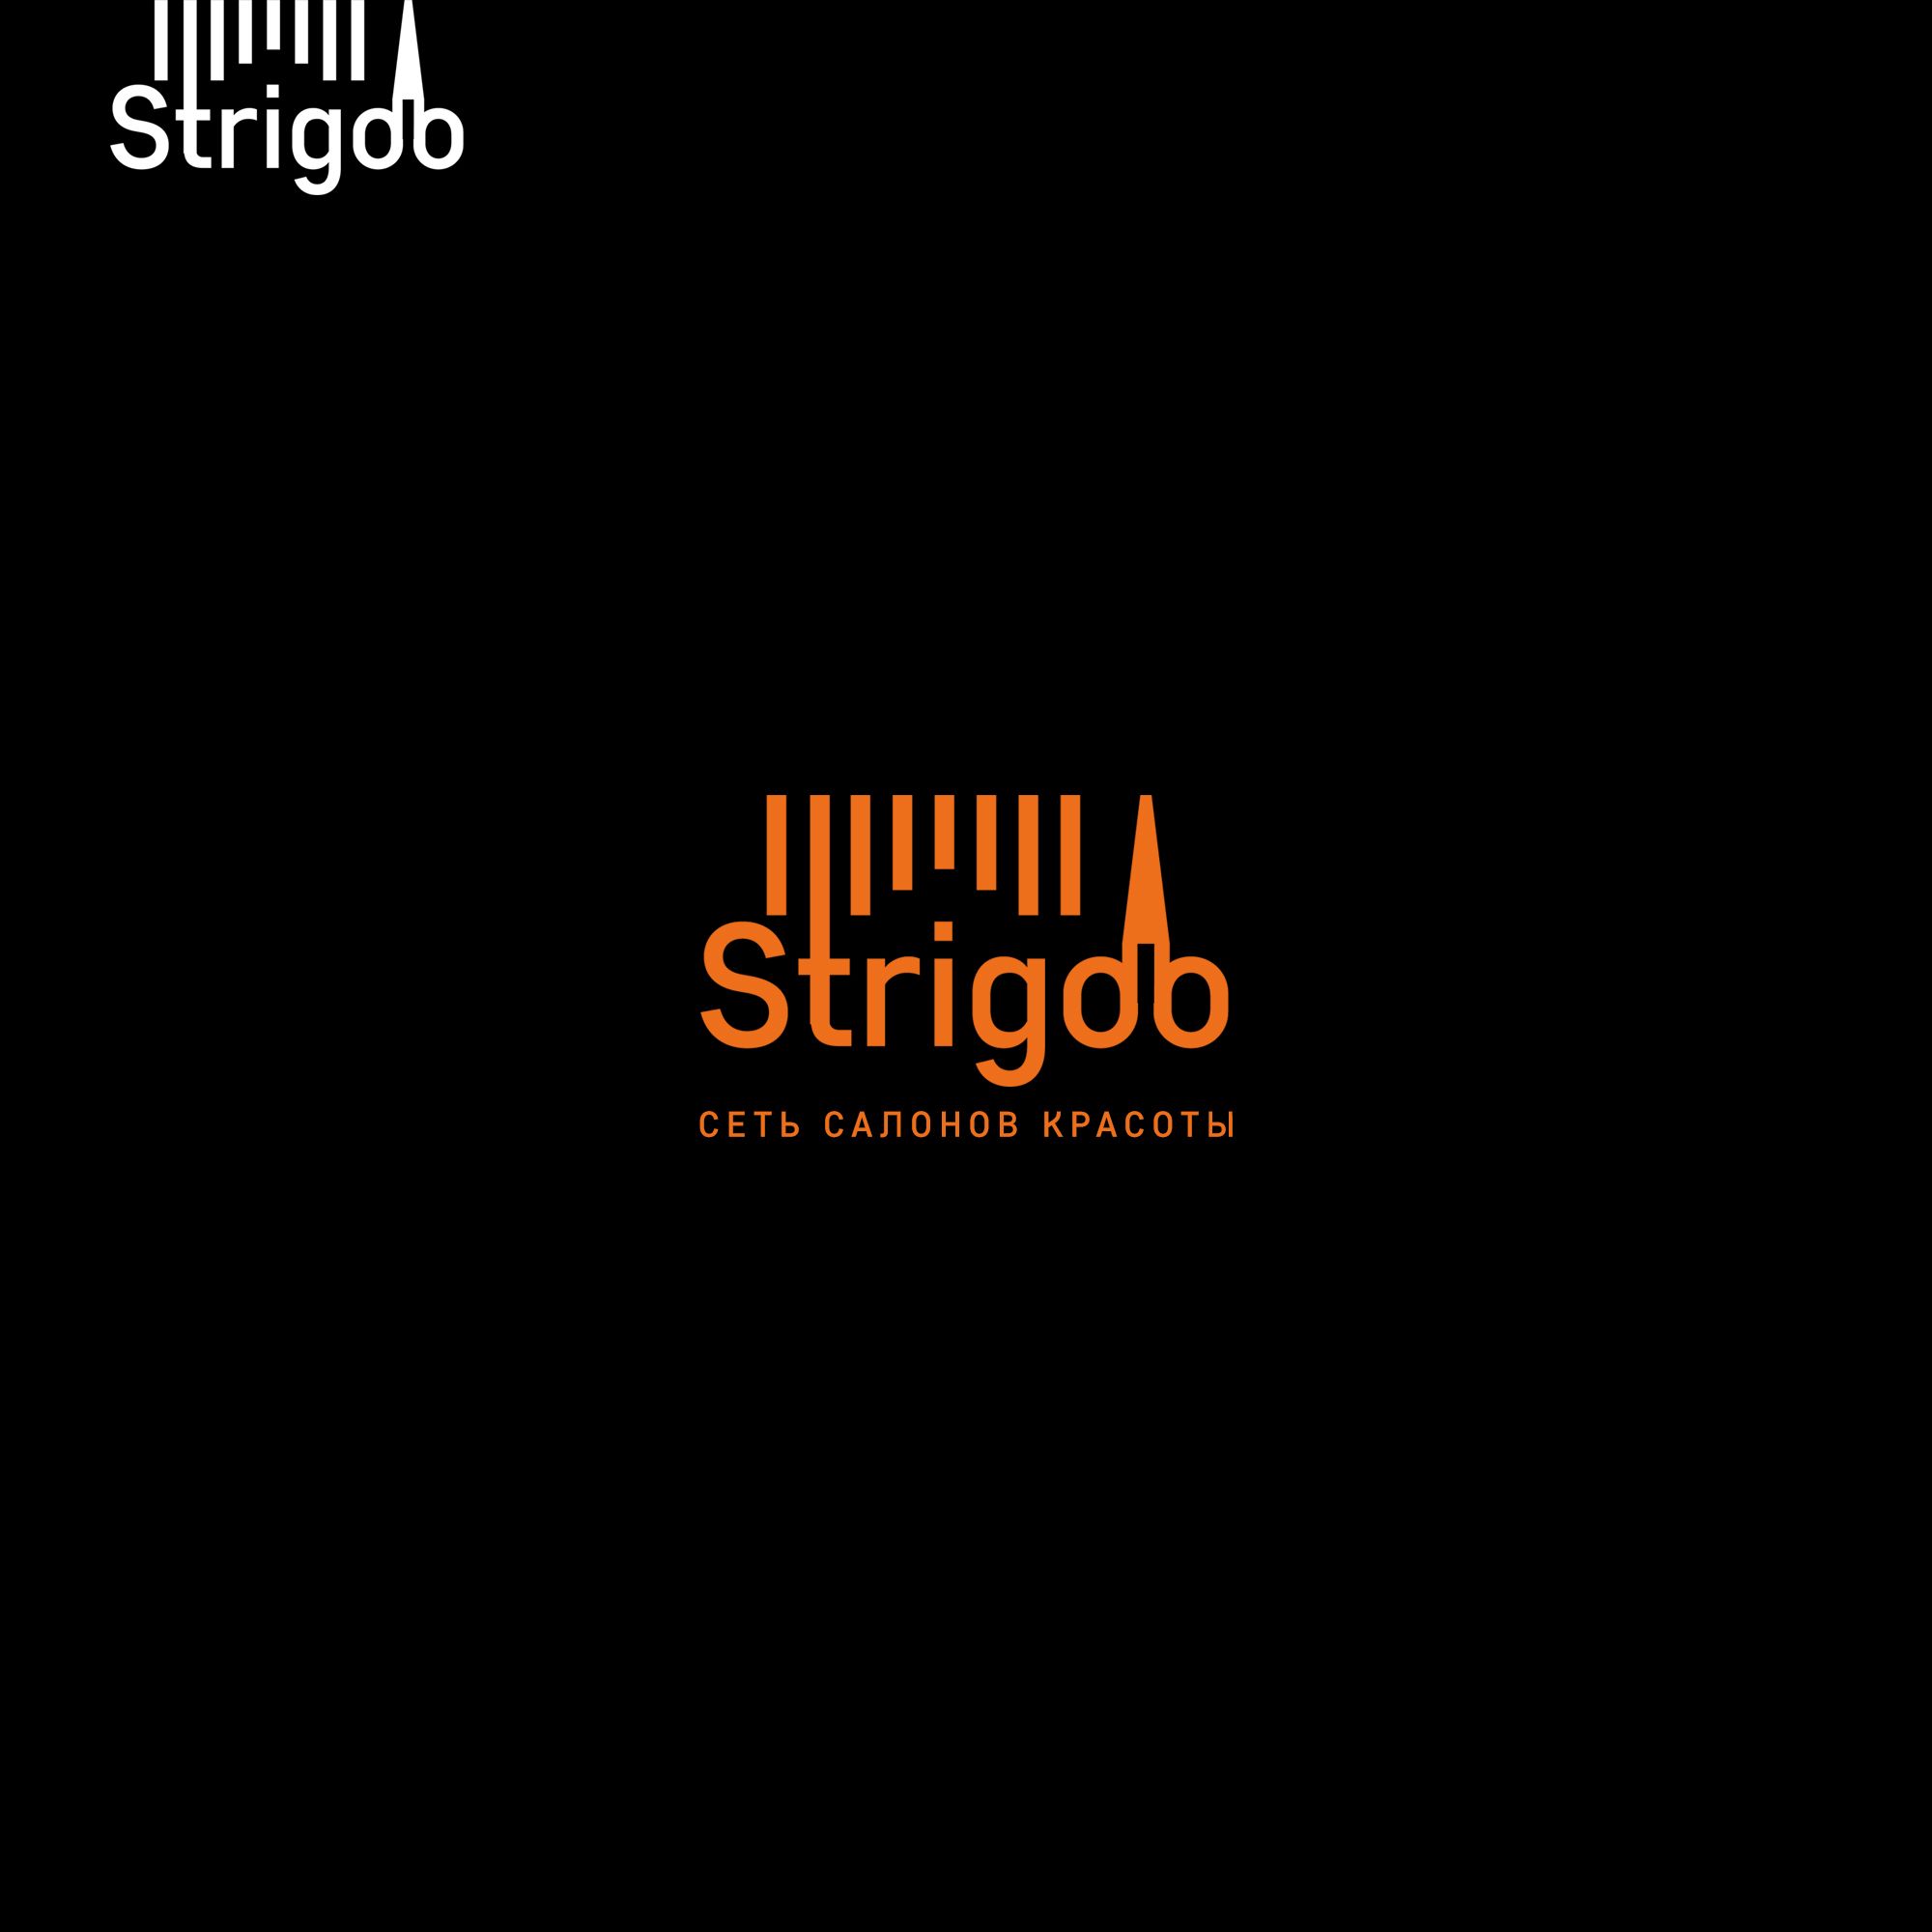 Лого и фирменный стиль для Strigoo - дизайнер weste32